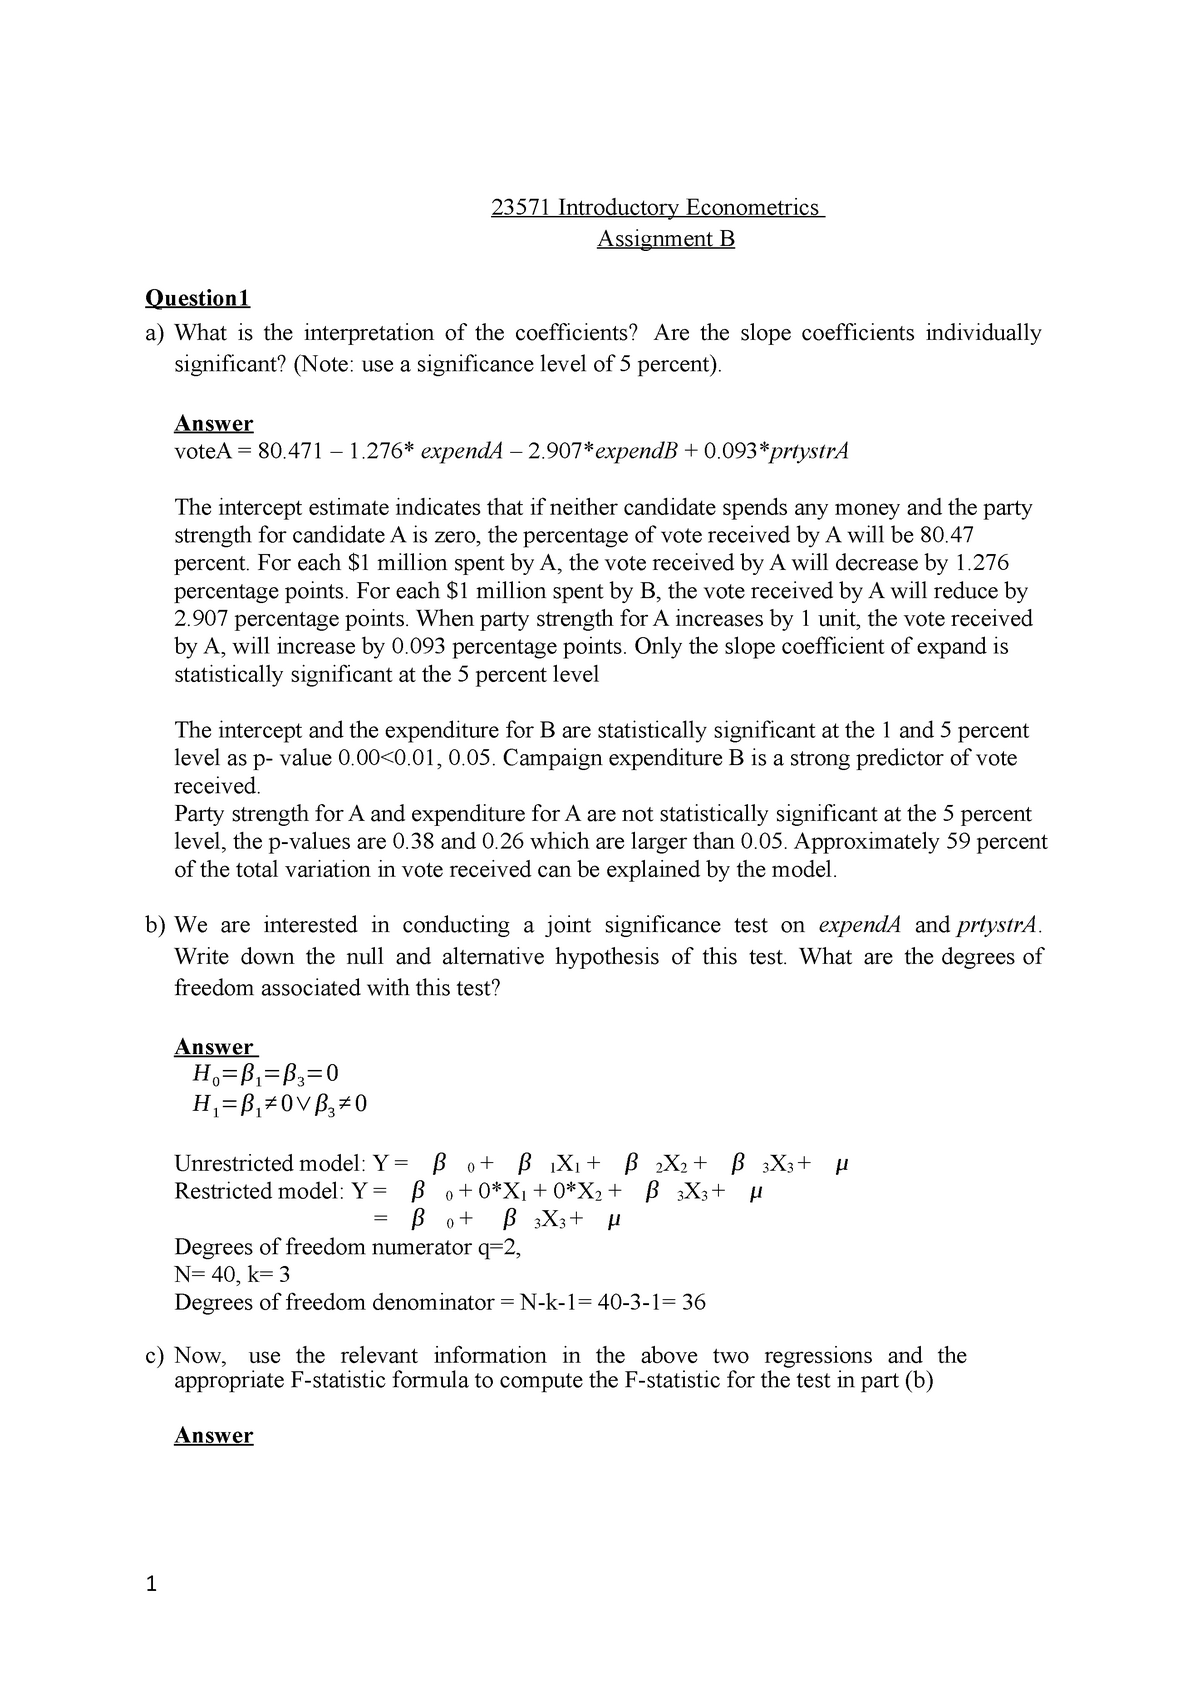 econometrics assignment example